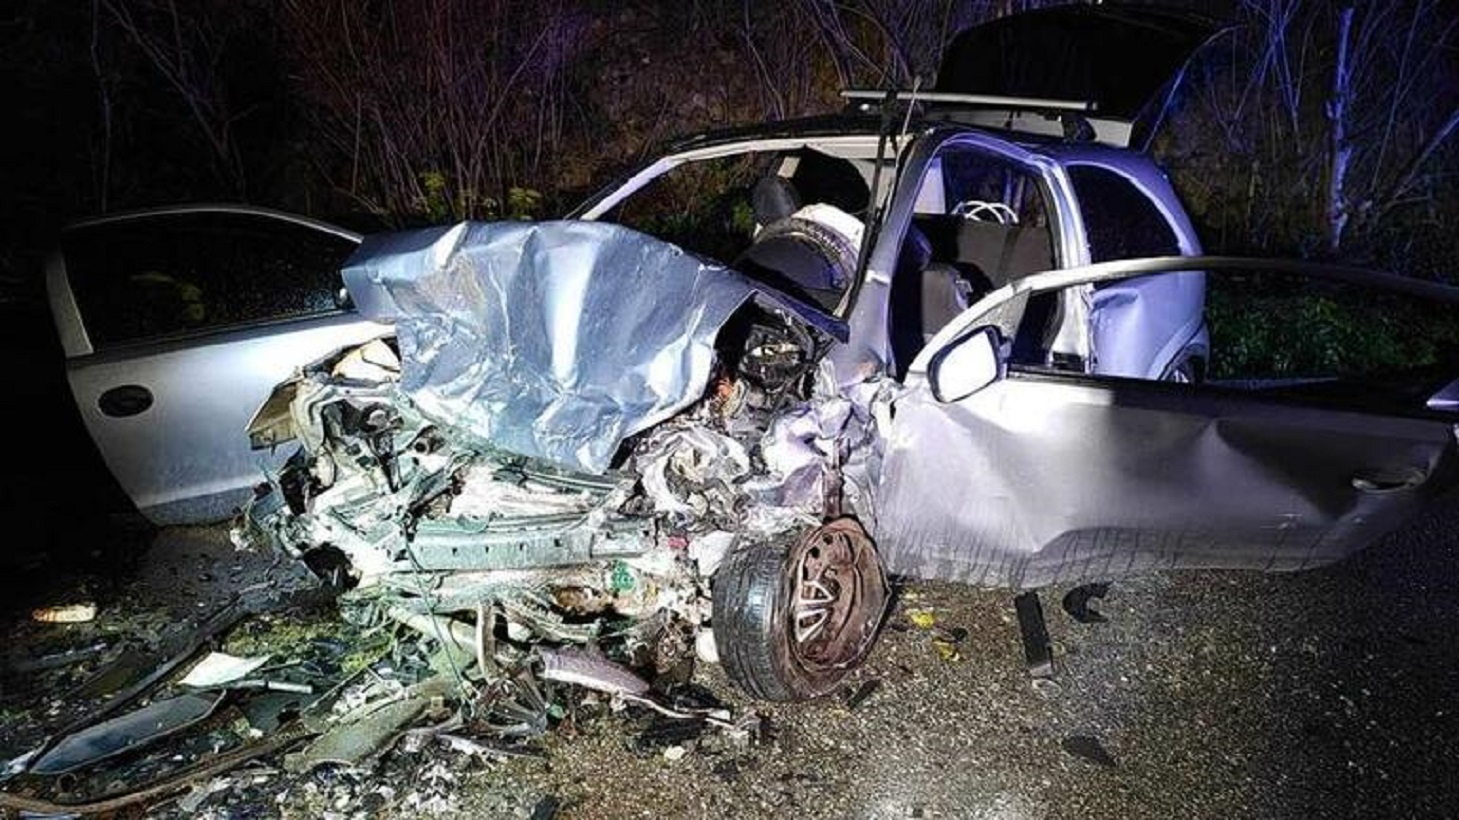 Χανιά: Αποκοιμήθηκε στο τιμόνι και μπήκε στο αντίθετο ρεύμα – Νέα στοιχεία για το τροχαίο δυστύχημα